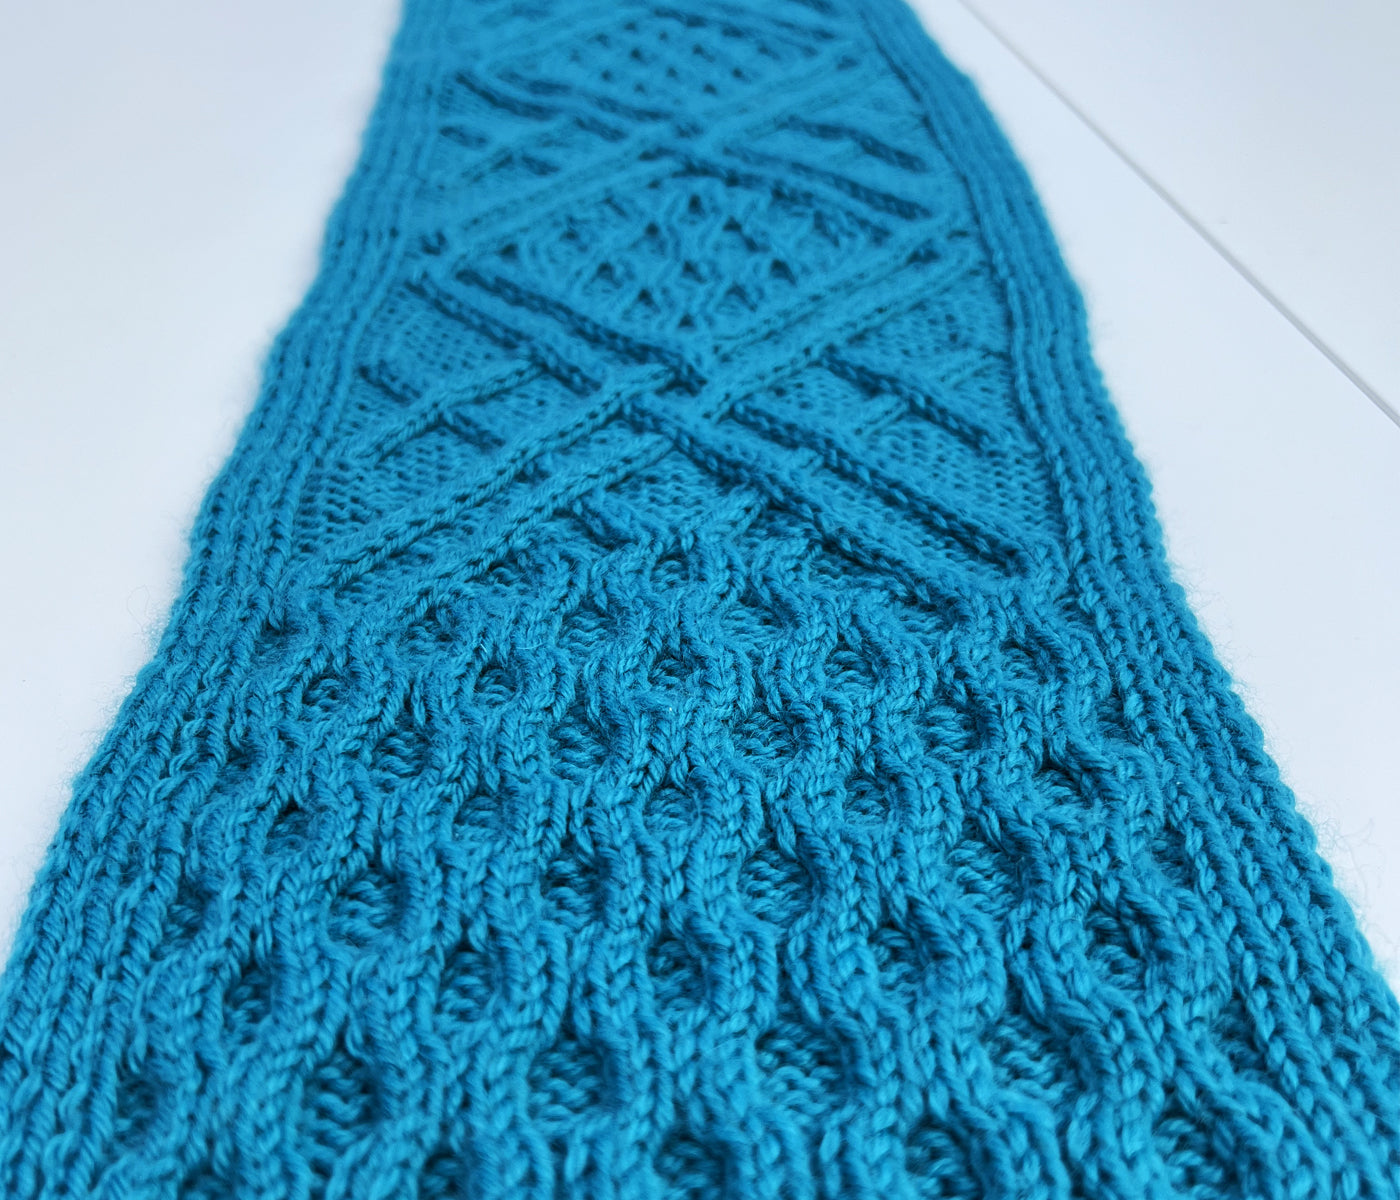 Constellation Scarf | Knitting Kit